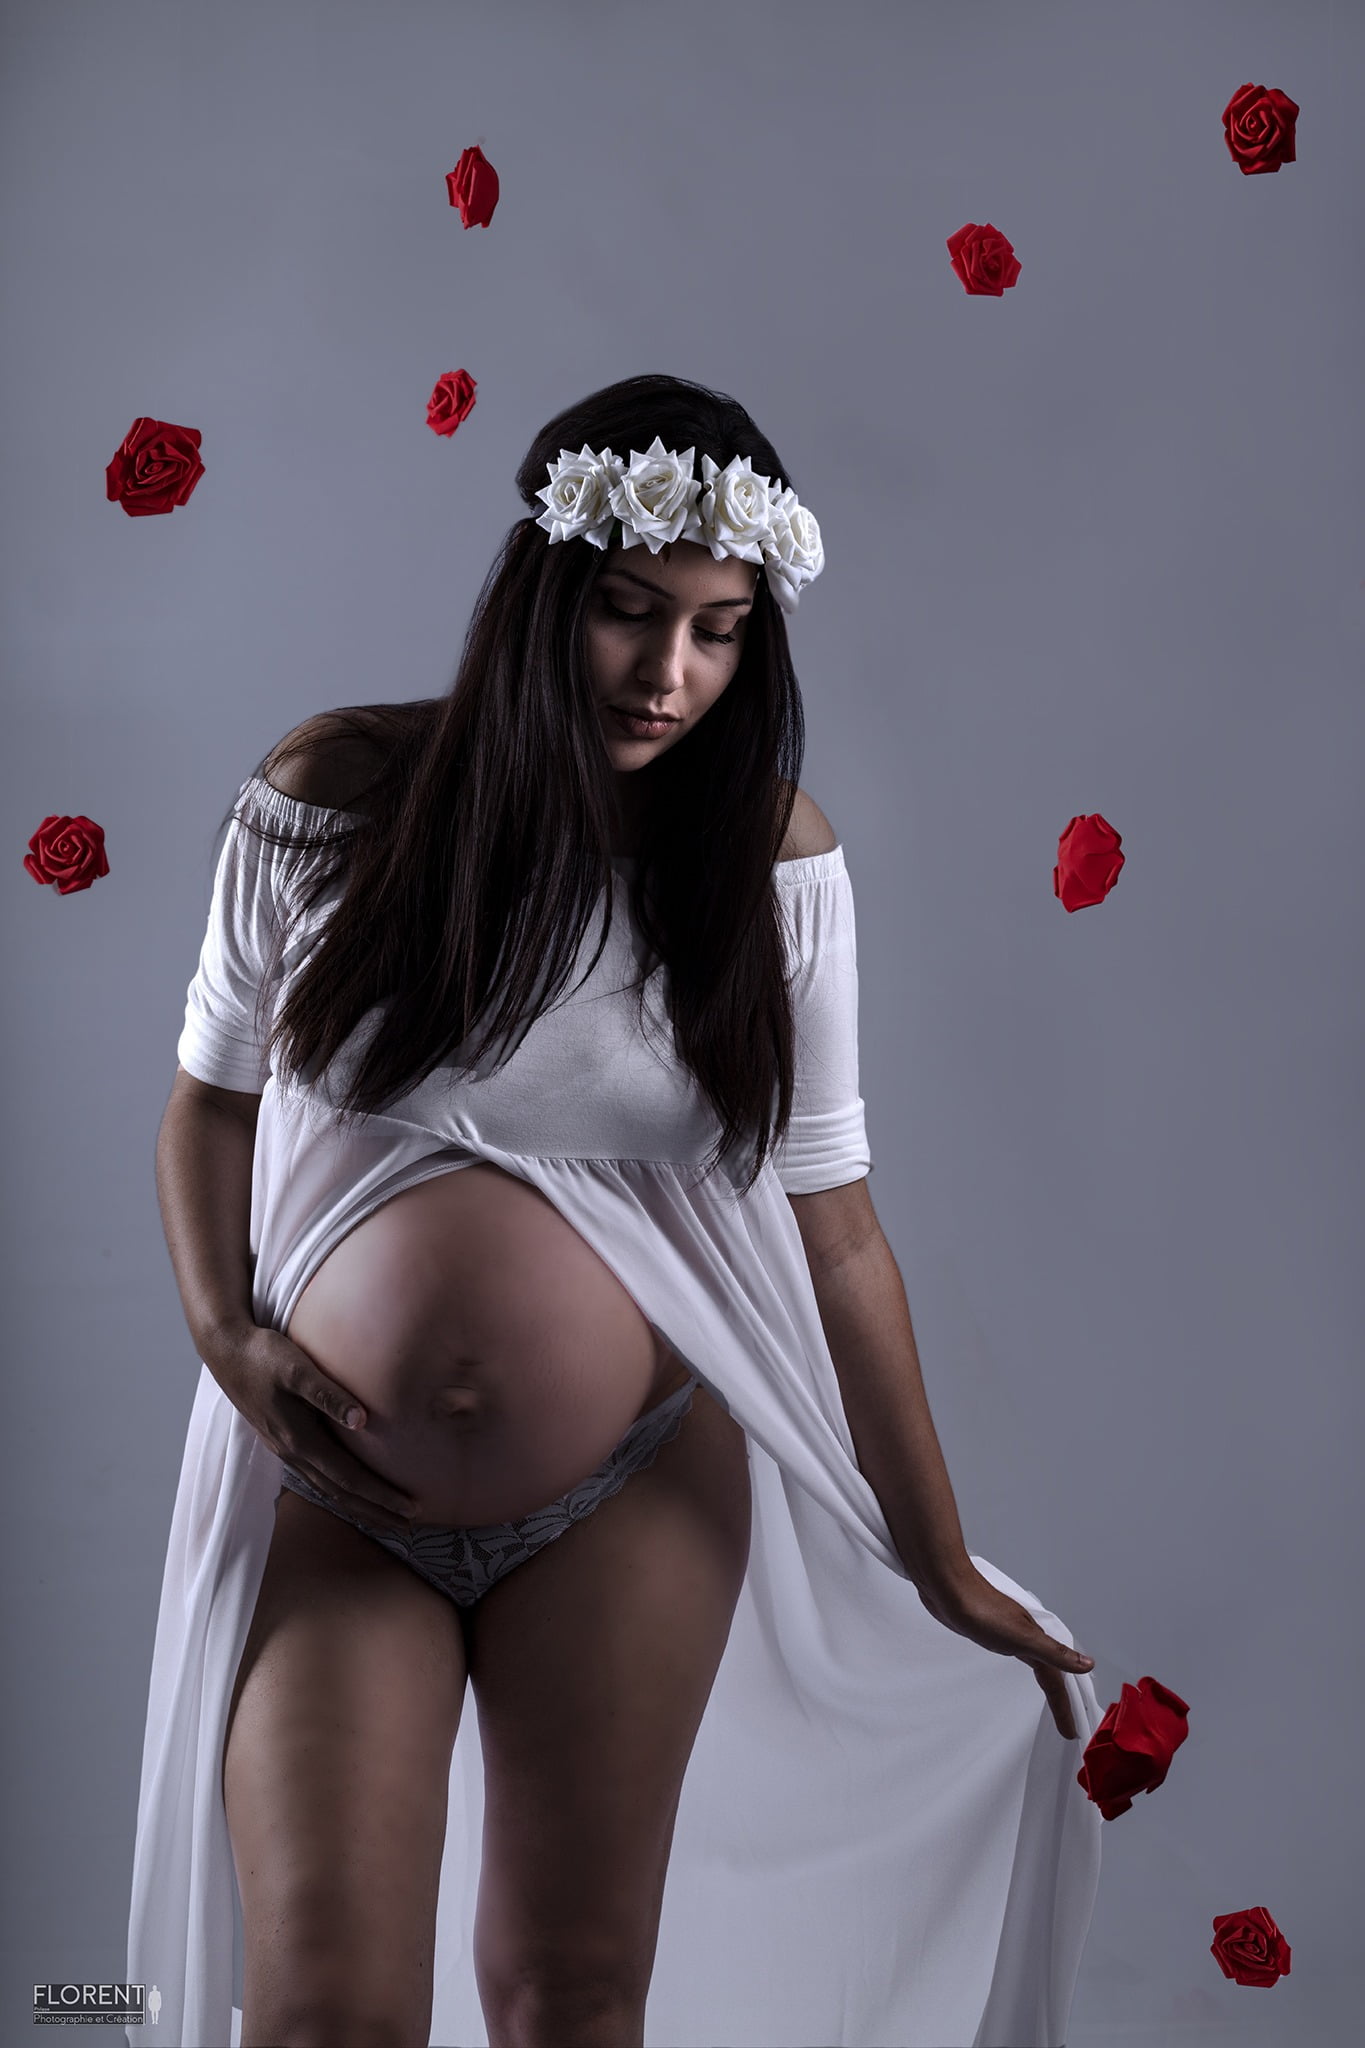 maternité photo avec roses rouges suspendues en robe blanche délicate florent studio boulogne sur mer lille paris